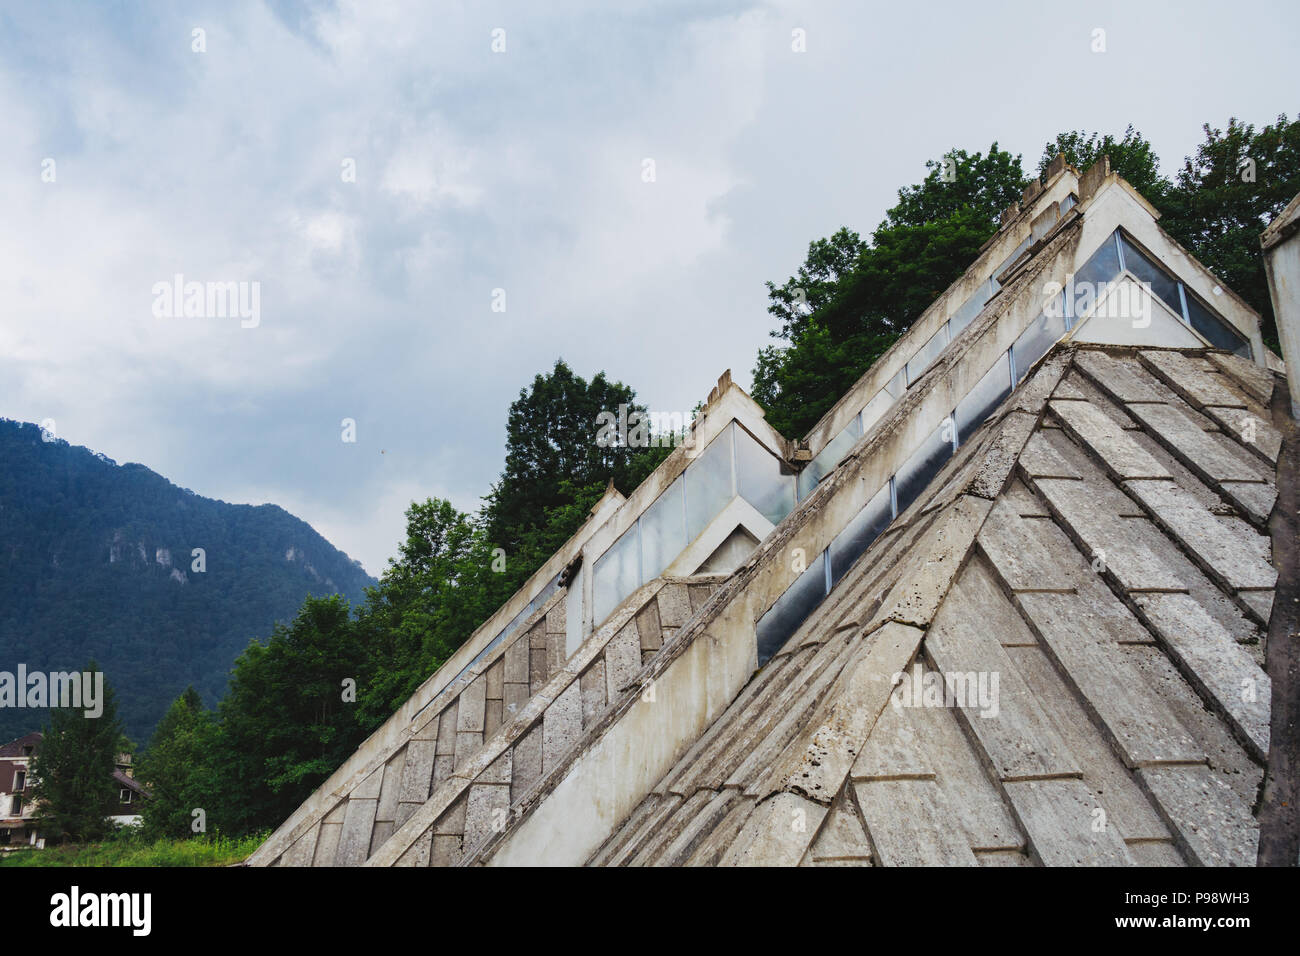 El inusual postmoderno Spomen-Dom líneas triangulares de la memoria (Casa) diseñado por Ingrid Radović en el Parque Nacional de Sutjeska, BiH Foto de stock